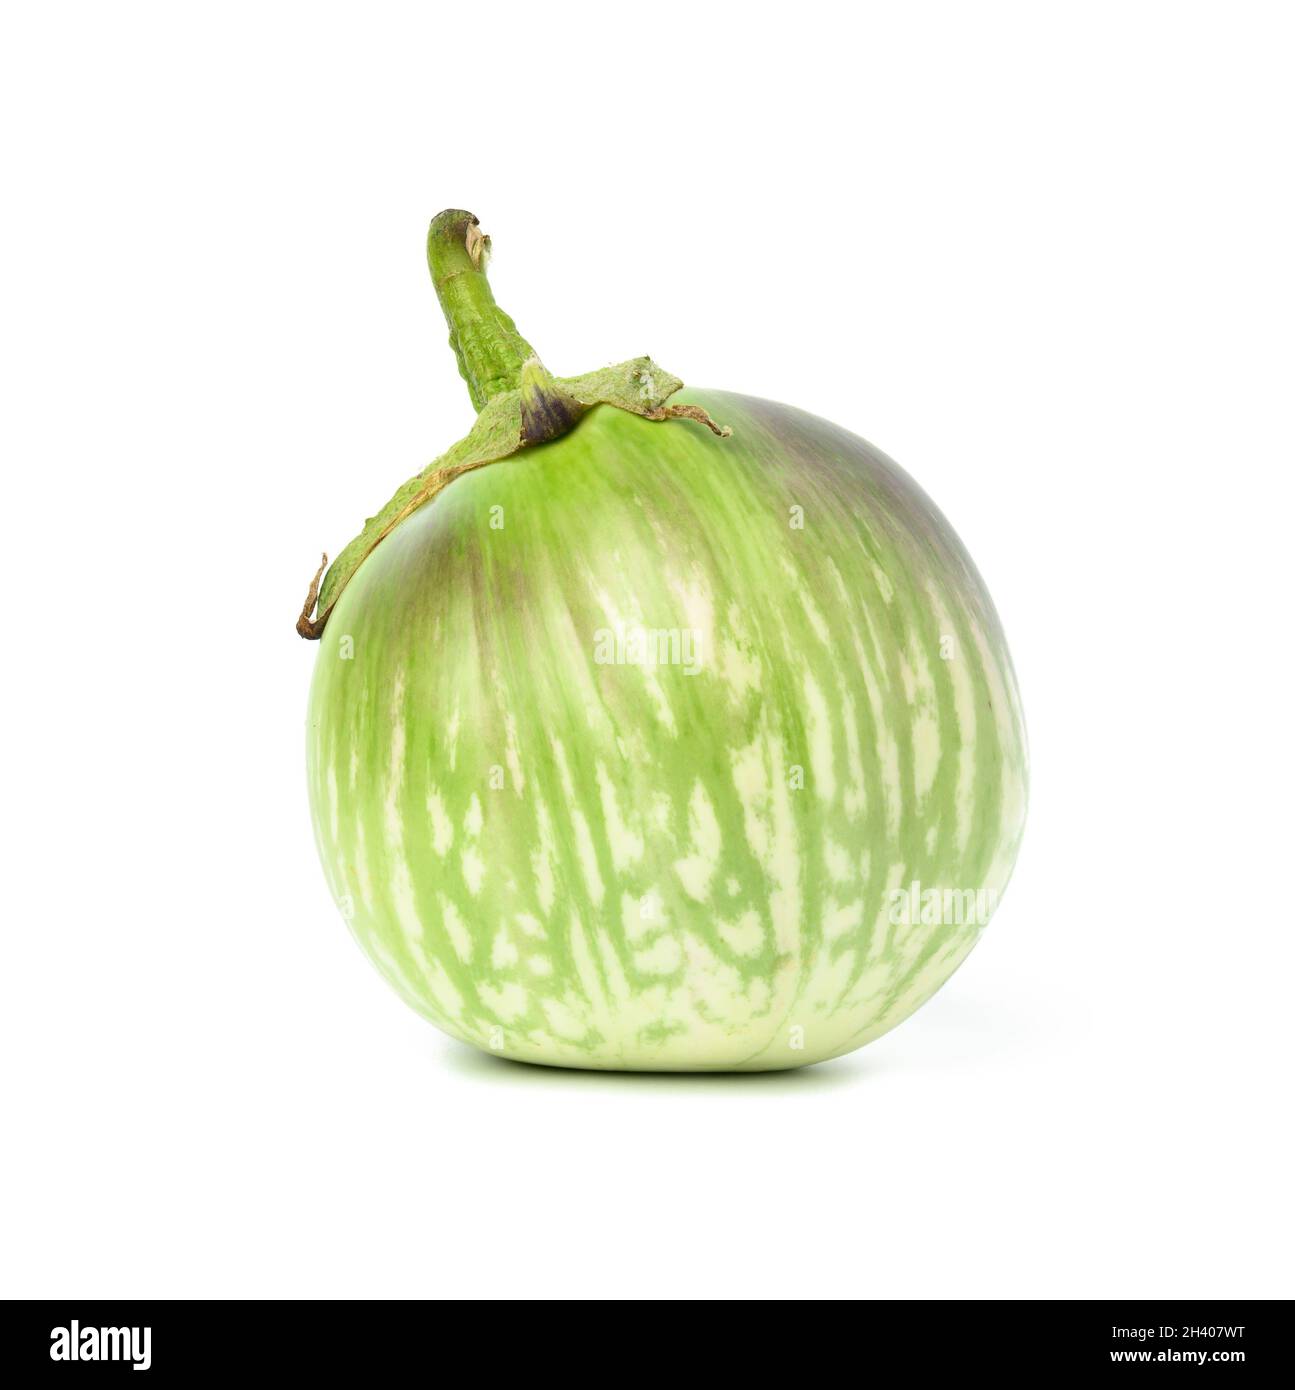 Melanzana matura verde isolata su sfondo bianco, vegetale sano e gustoso Foto Stock